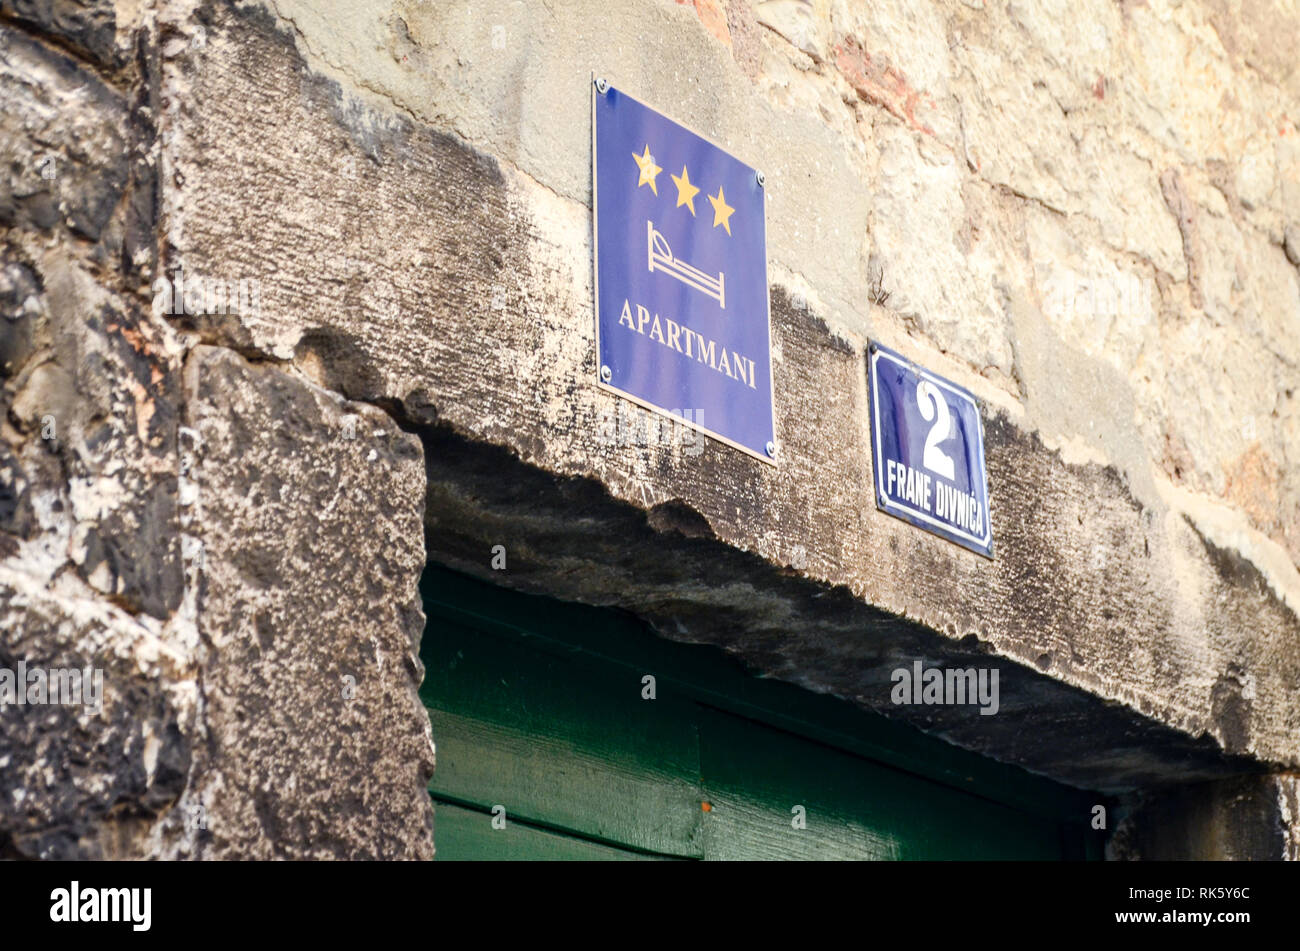 APARTMANI sign in the old town of Sibenic, Croatia Stock Photo